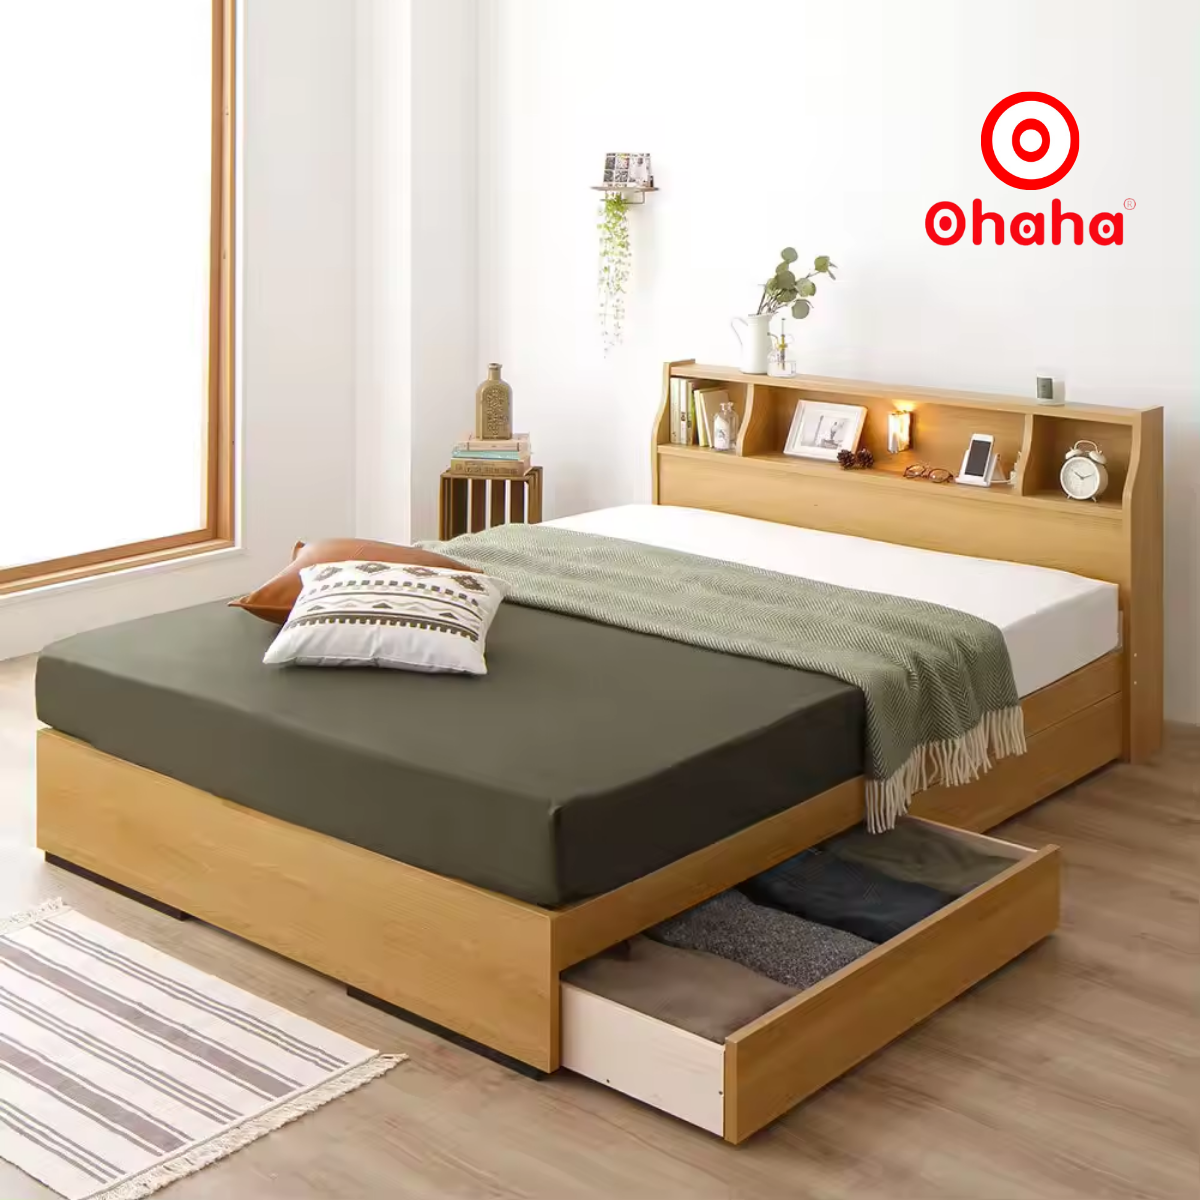 [Kèm ảnh thật - Miễn phí lắp đặt & vận chuyển] Giường ngủ gỗ công nghiệp cao cấp OHAHA chuẩn Nhật - Yellow - GC041 - 01